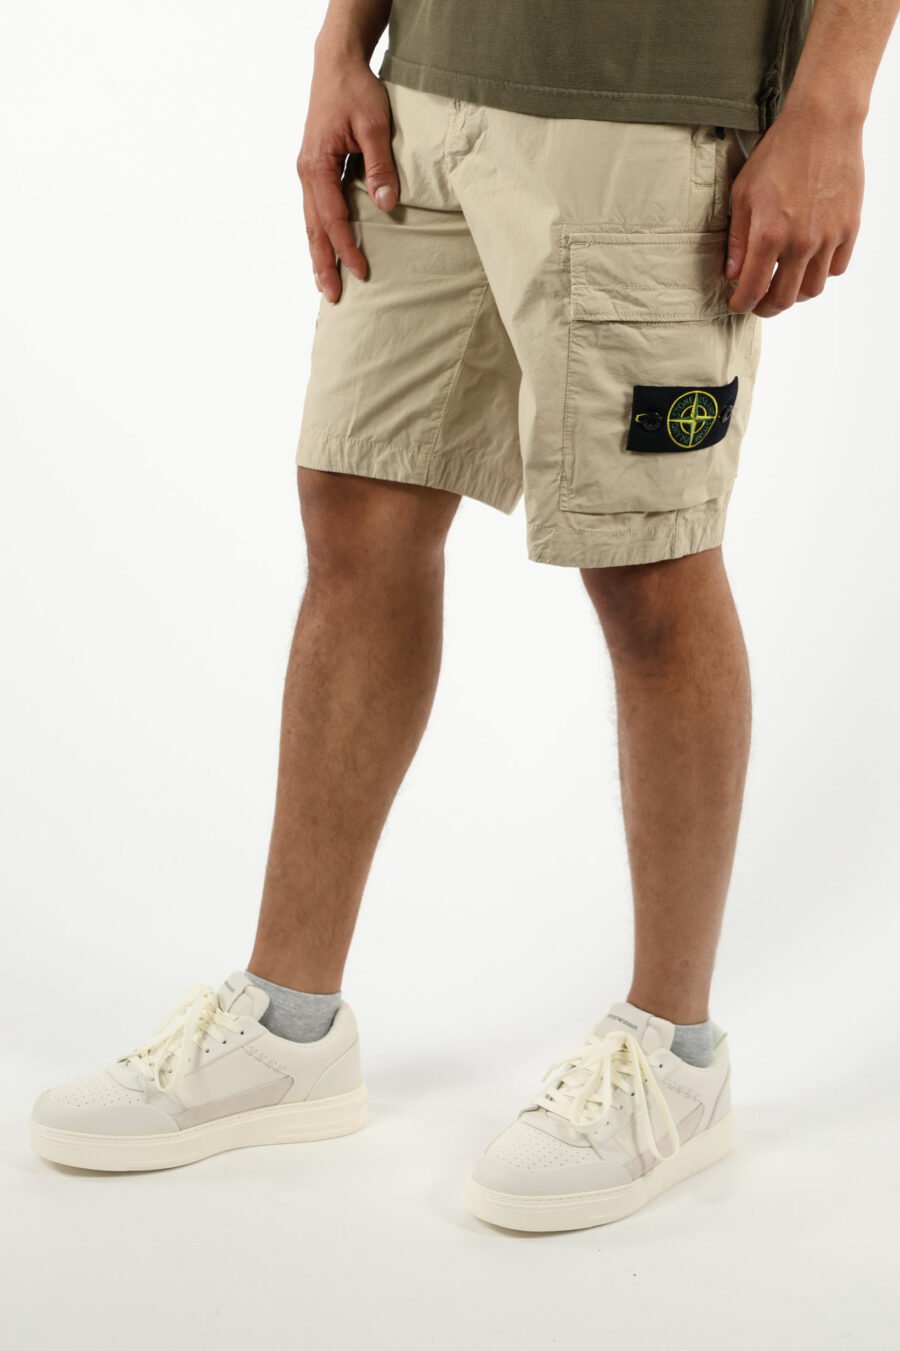 Pantalón corto color arena estilo cargo con logo parche brújula - 111371